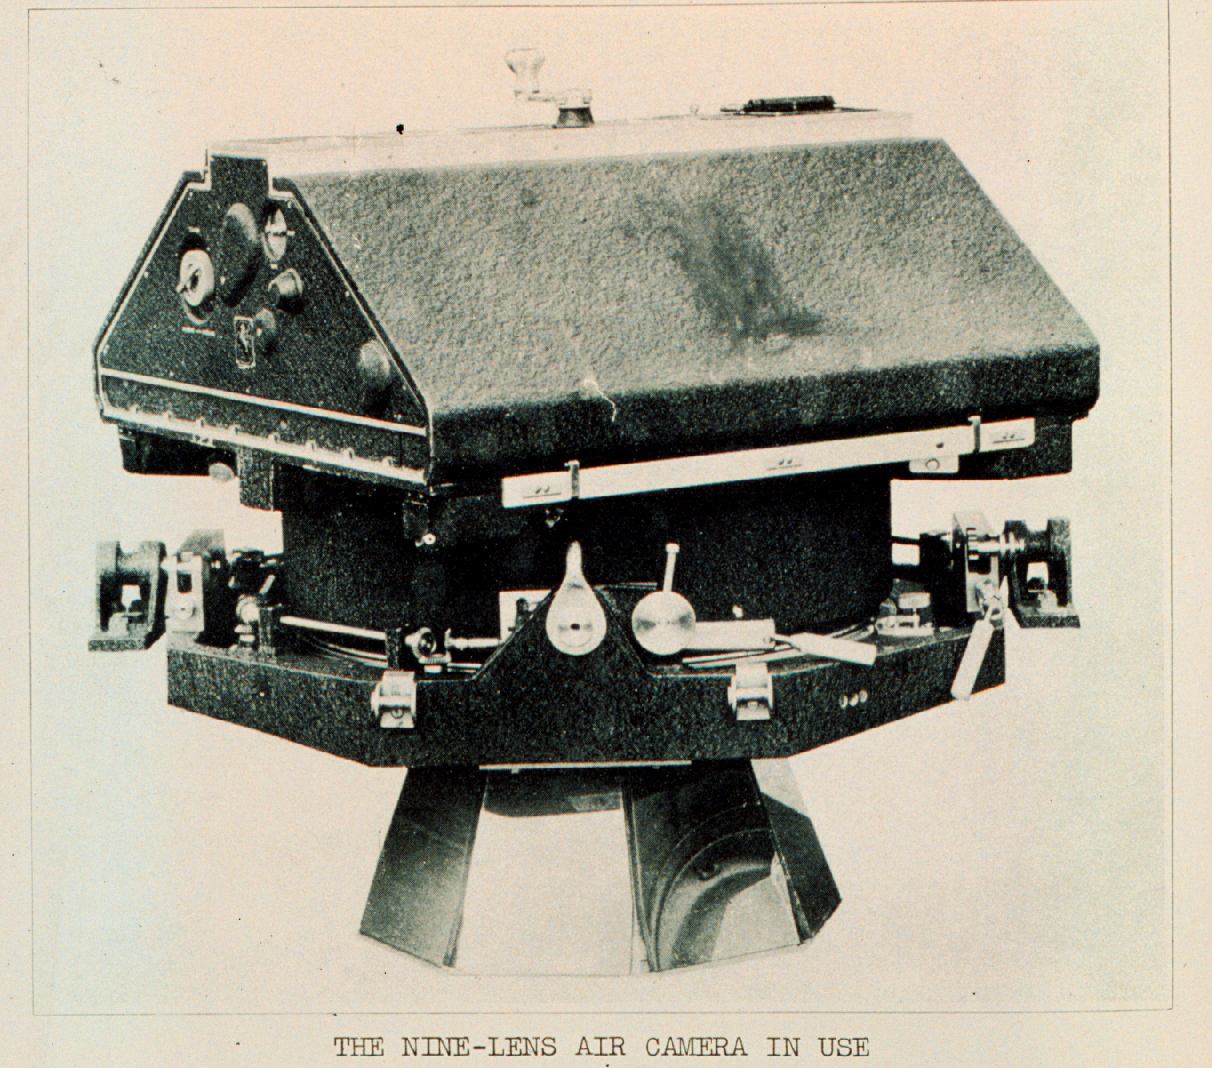 The nine-lens aerial camera